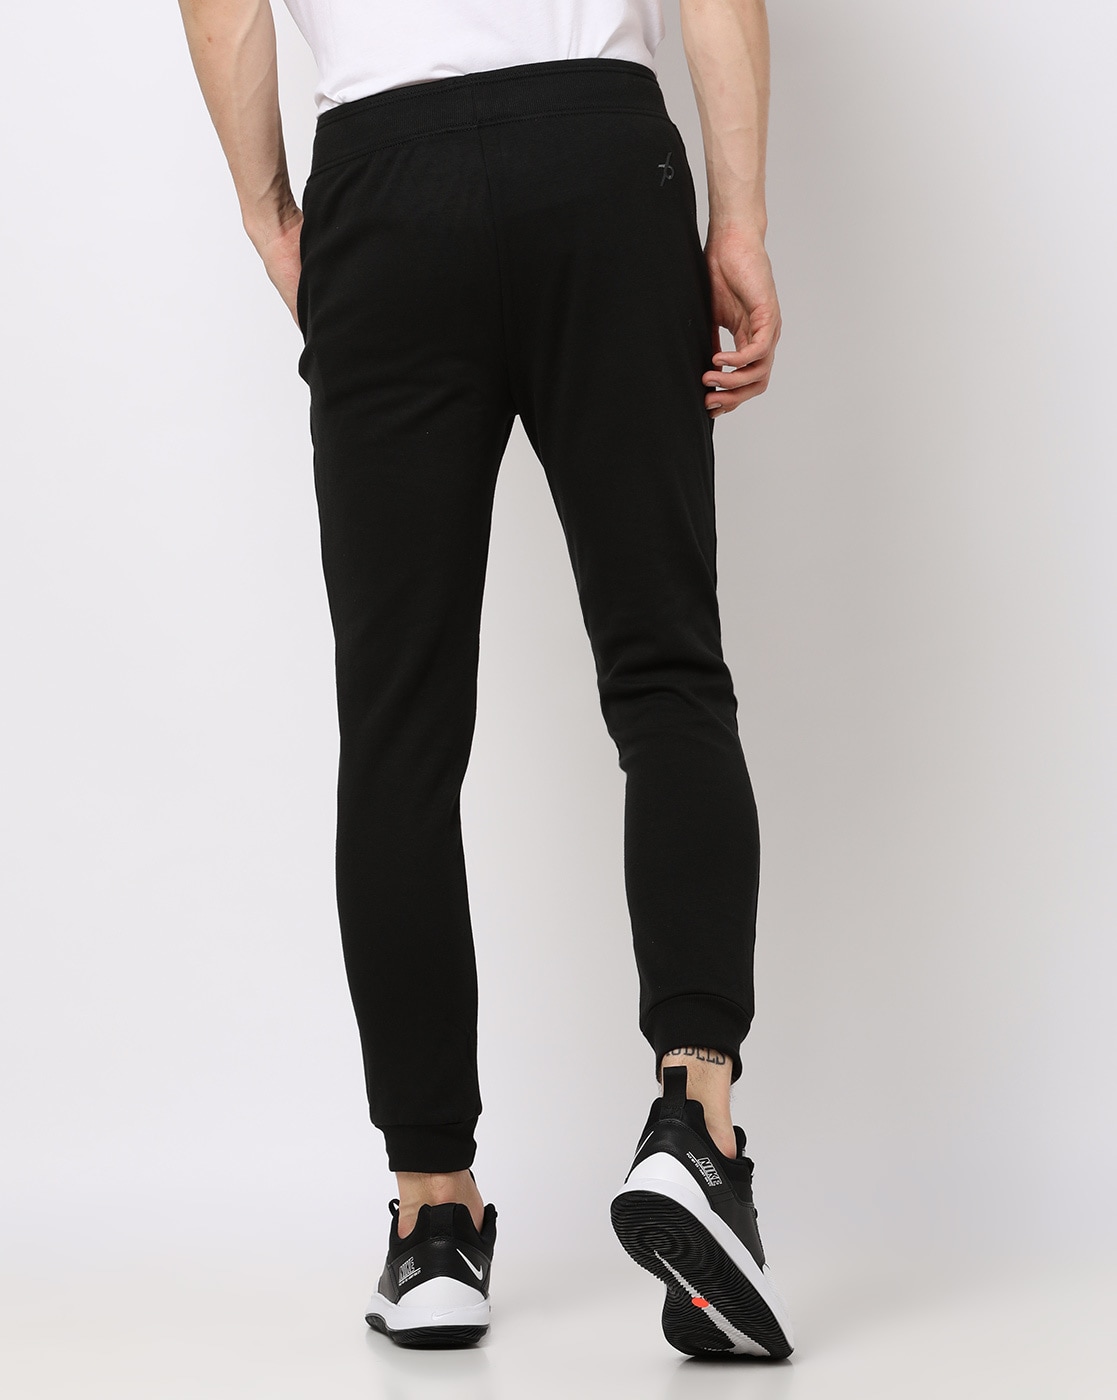 Details 75+ jagger pants black latest - in.eteachers